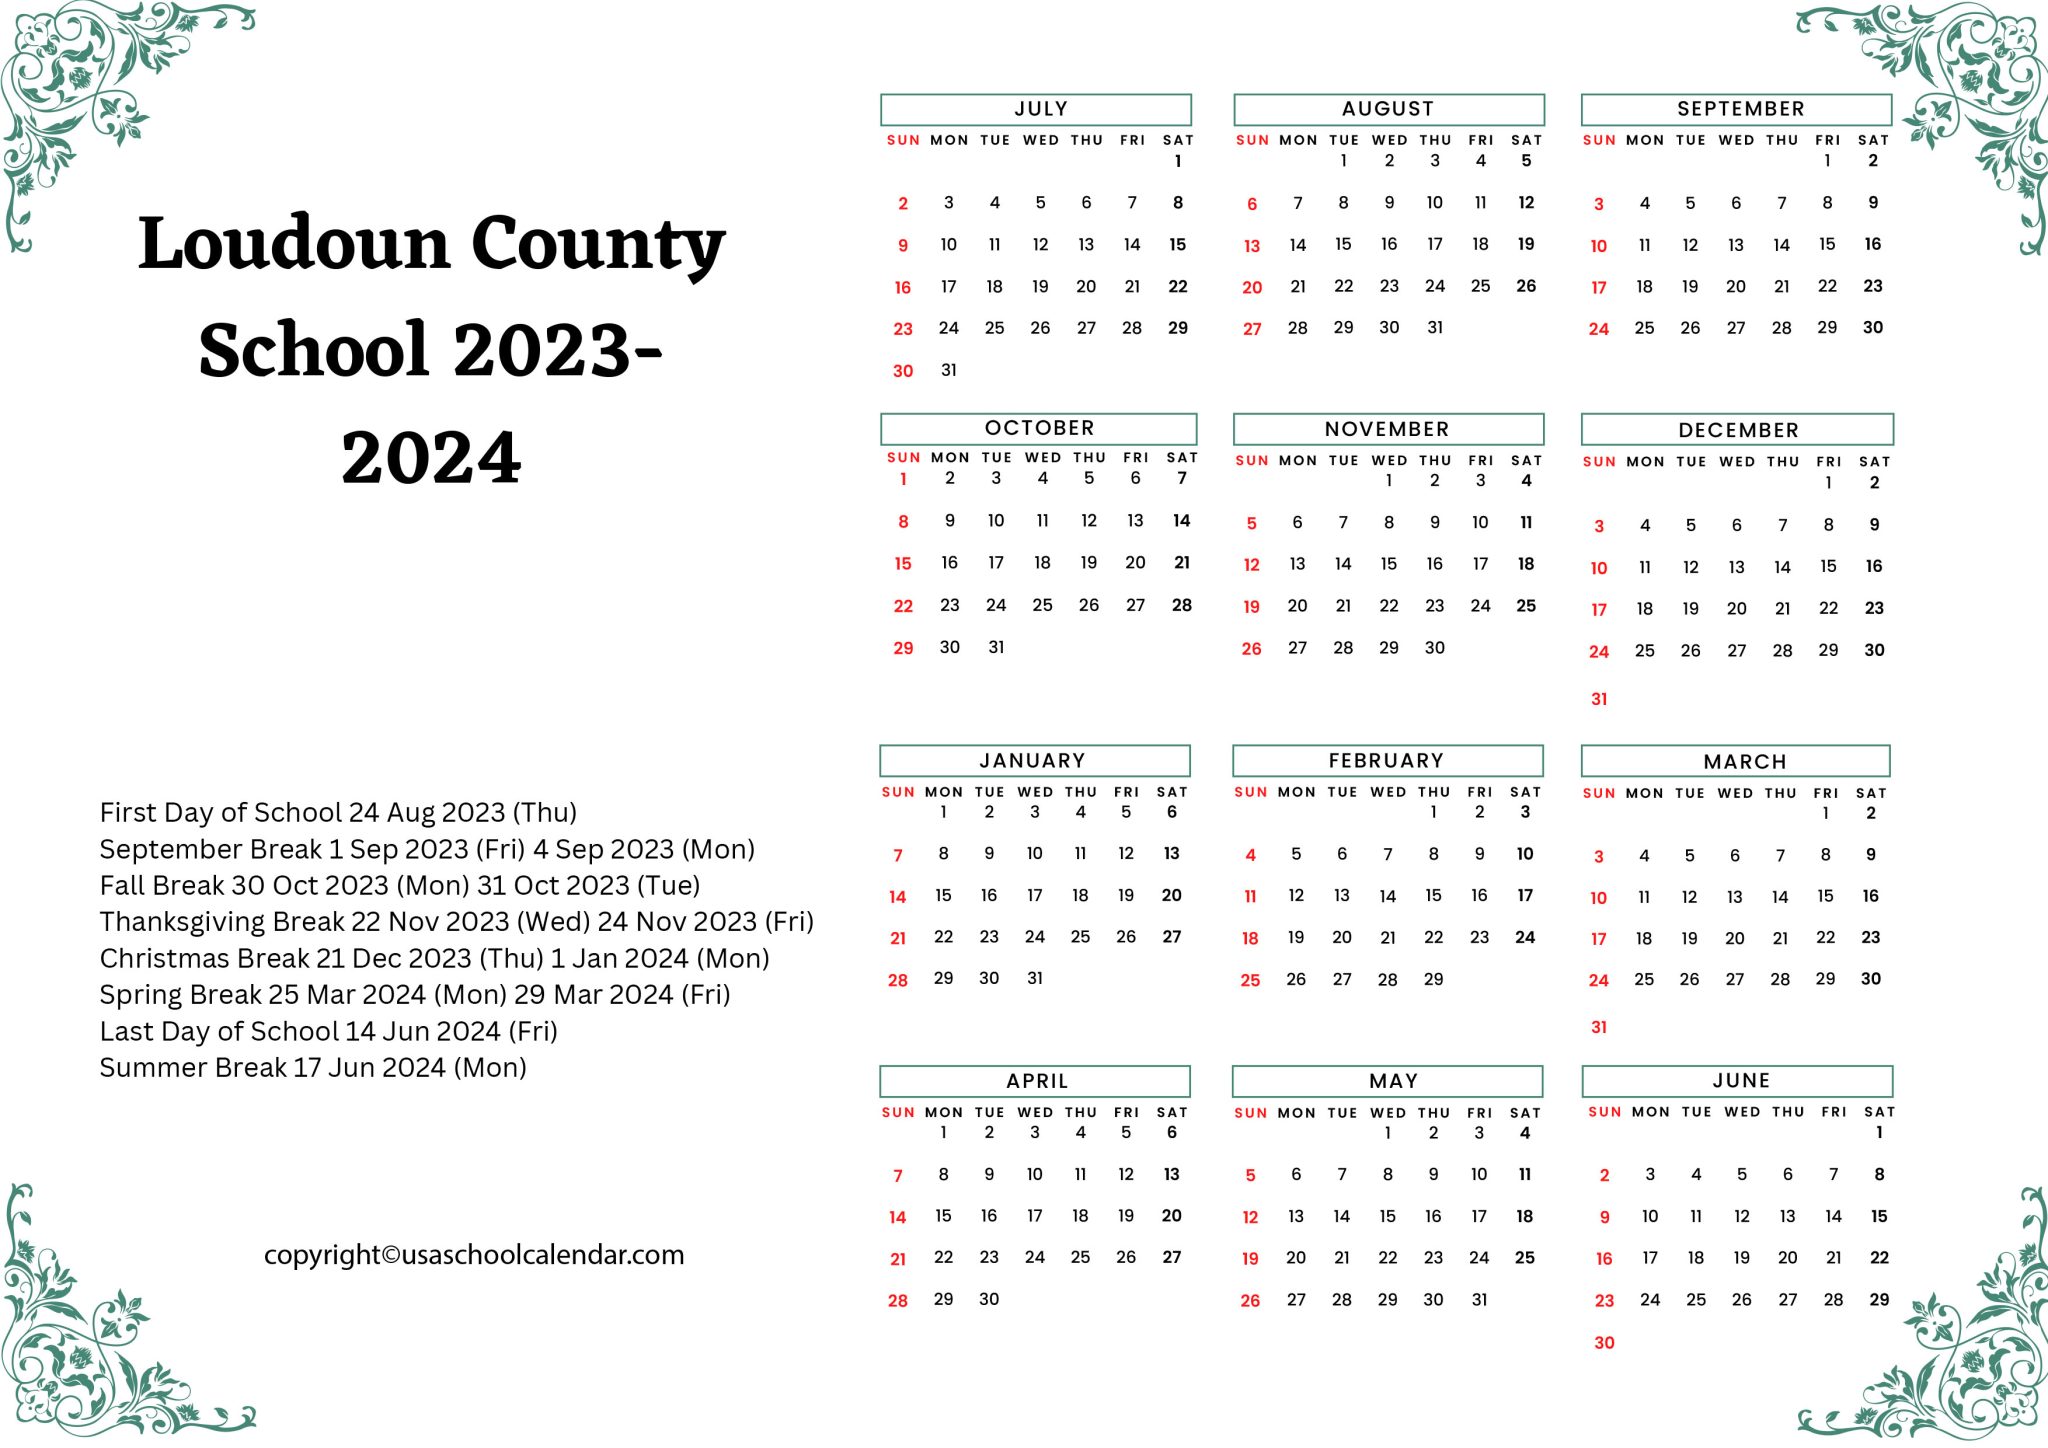 Loudoun County Schools Calendar Holidays 2023 2024